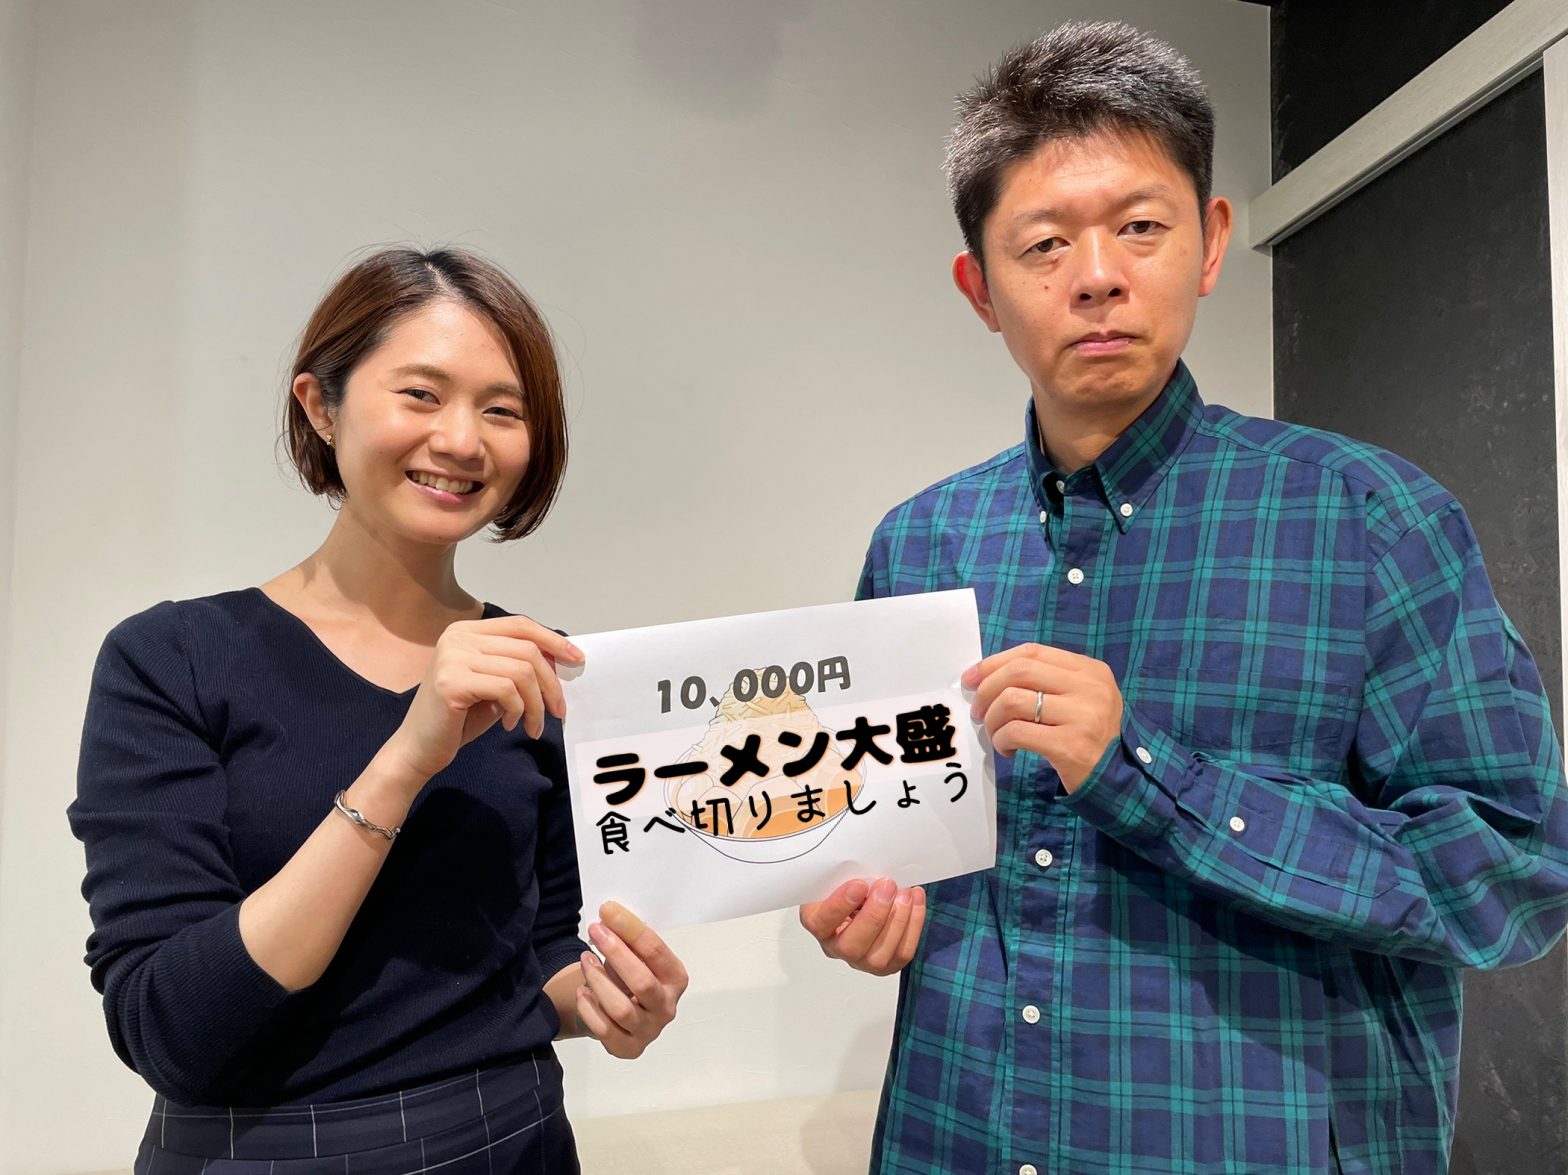 「ラーメン大盛食べ切りましょう」と書かれた紙を持った島田秀平さんと古藤由佳弁護士